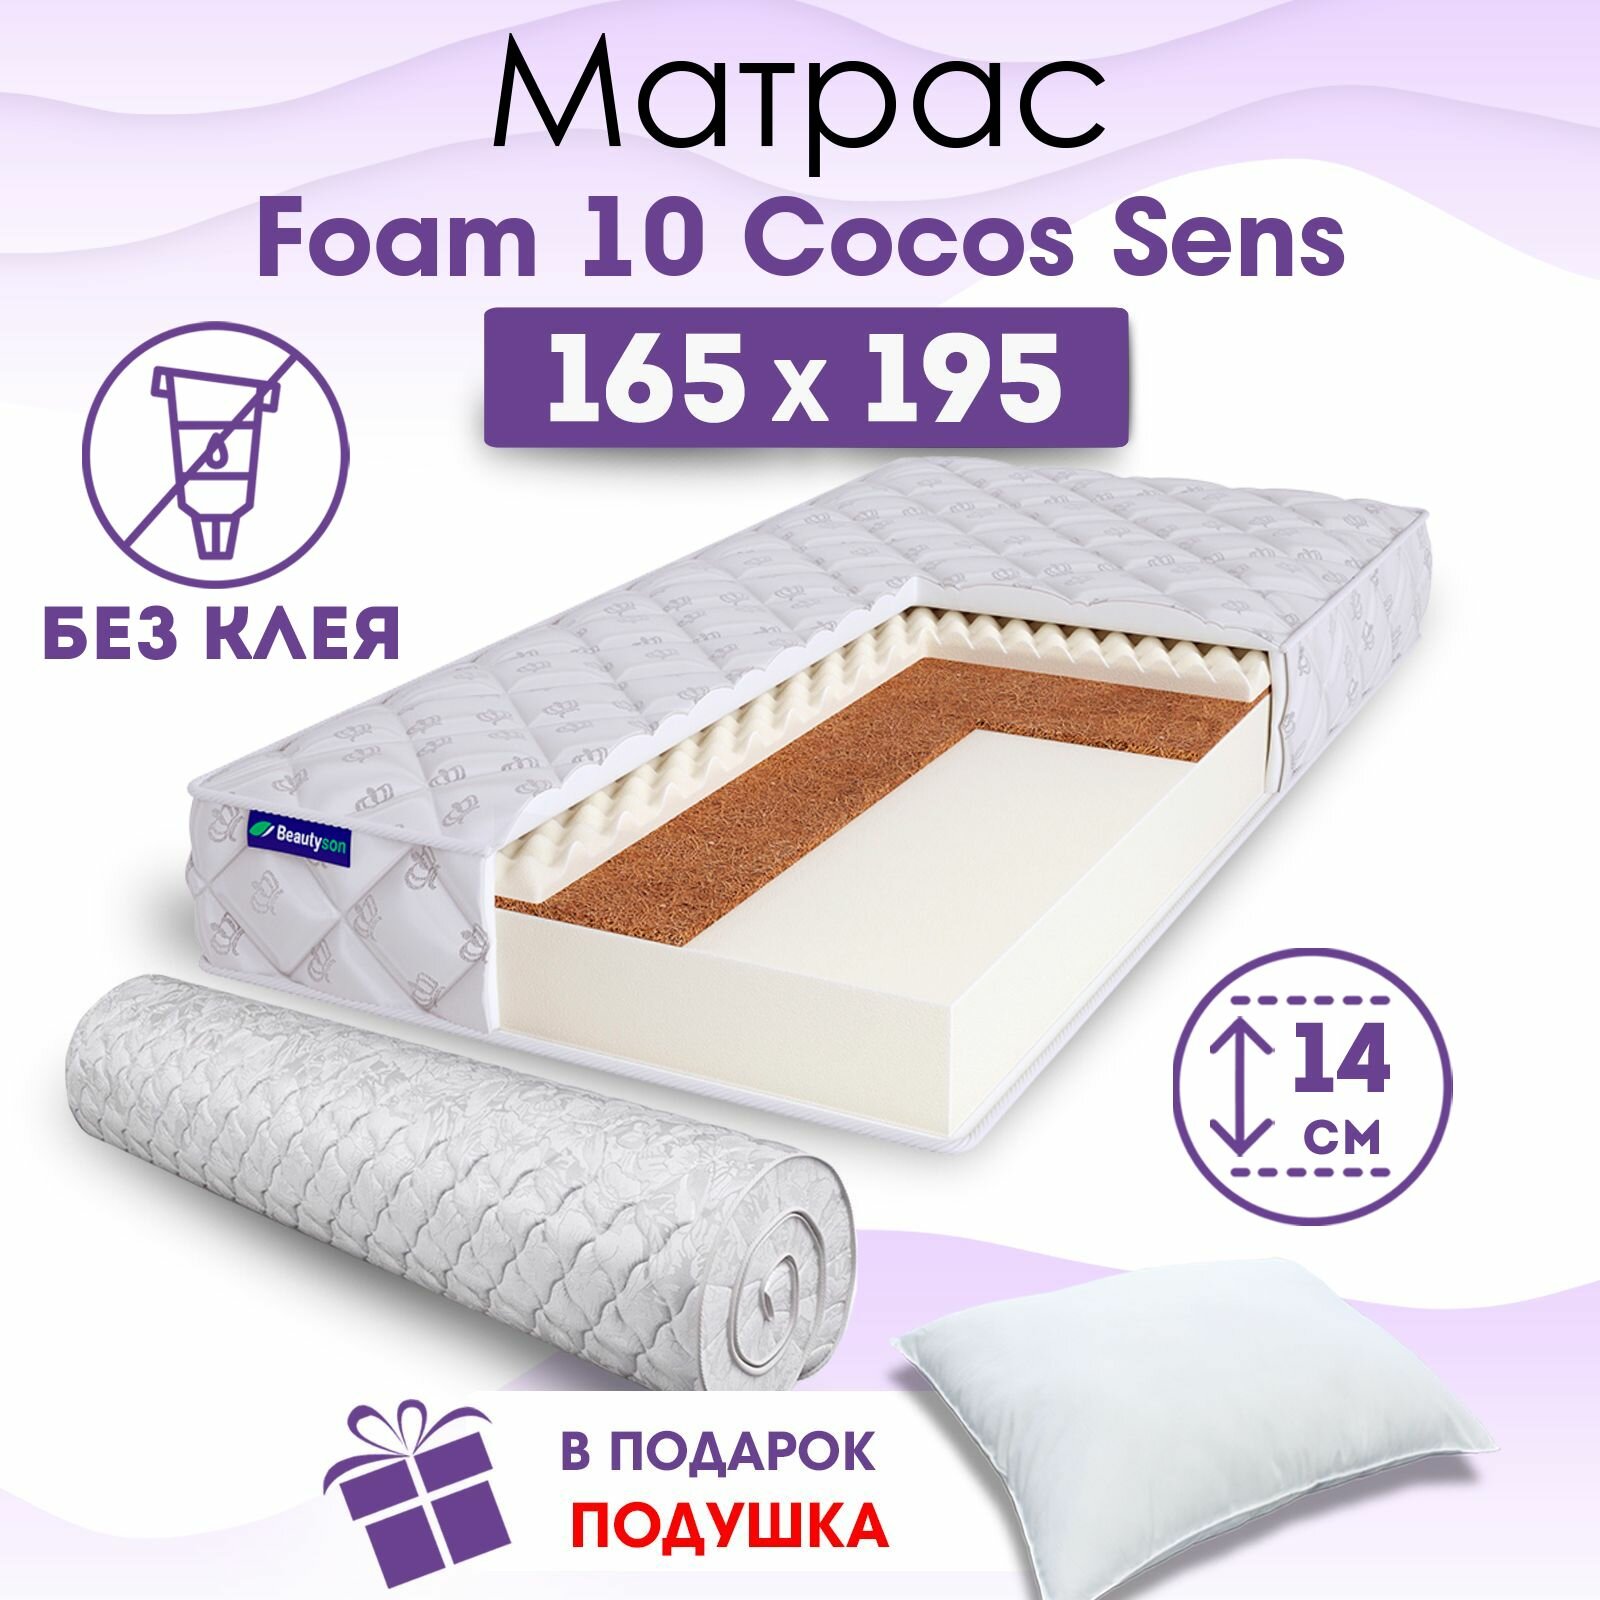 Ортопедический матрас Beautyson Foam 10 Cocos Sens без клея, 165х195, 14 см, беспружинный, двухспальный, на кровать, для дивана, умеренно мягкий